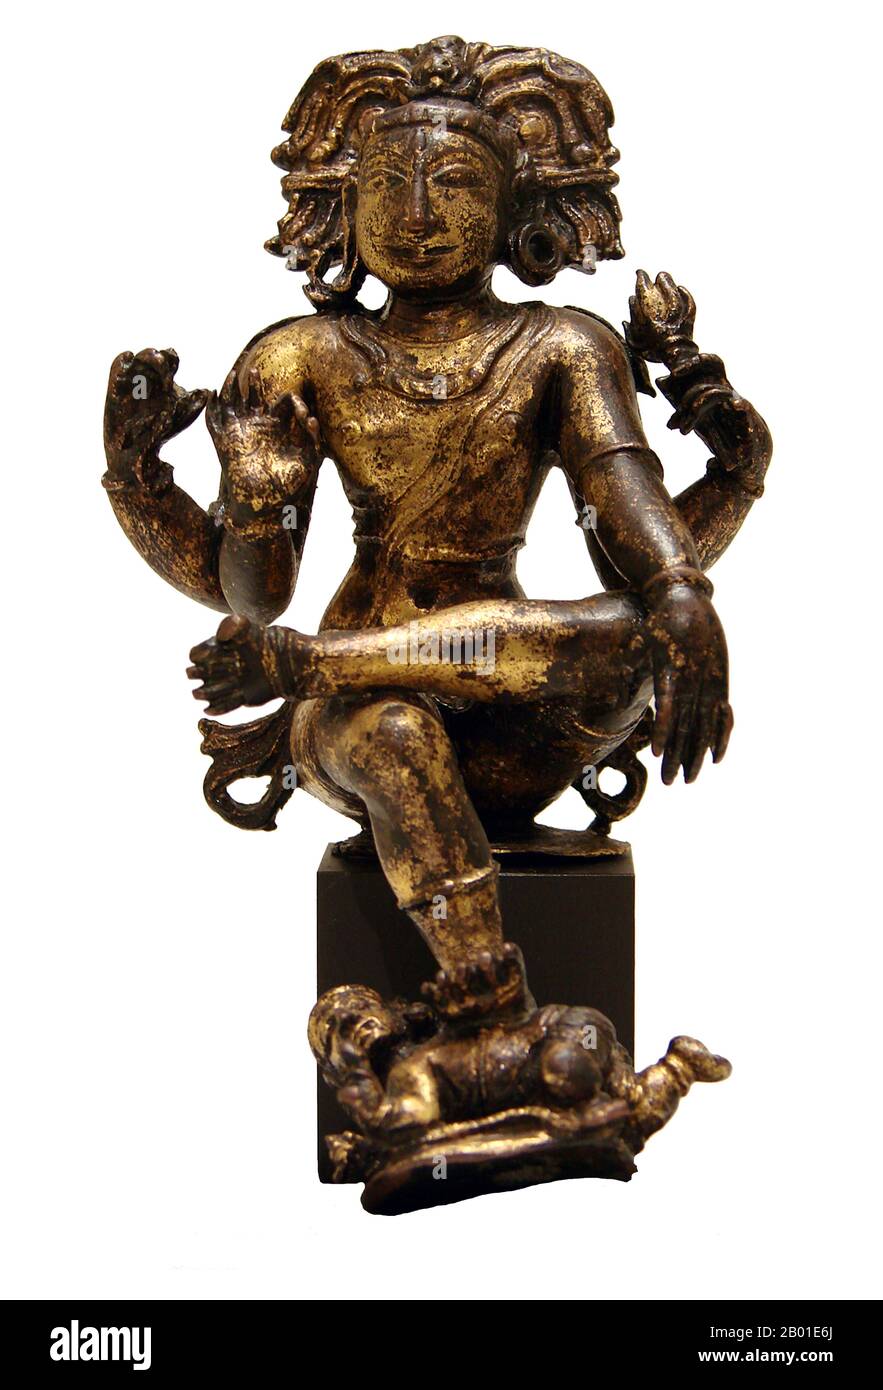 India: Shiva come Dakshinamurthy o Jnana Dakshinamurti, Signore della conoscenza, Dinastia Vijayanagar (15th-16th ° secolo), Tamil Nadu, 16th ° secolo. Dakshinamurthy o Jnana Dakshinamurti (sanscrito: दक्षिणामूर्ति (Dakṣiṇāmūrti)) è un aspetto di Shiva come guru (insegnante) di tutti i tipi di conoscenza, in particolare la jnana. Questo aspetto di Shiva è la sua personificazione come la suprema o ultima consapevolezza, comprensione e conoscenza. Questa forma rappresenta Shiva nel suo aspetto come insegnante di yoga, musica e saggezza, e dando esposizione sulle shastra. Egli è adorato come il dio della sapienza. Foto Stock